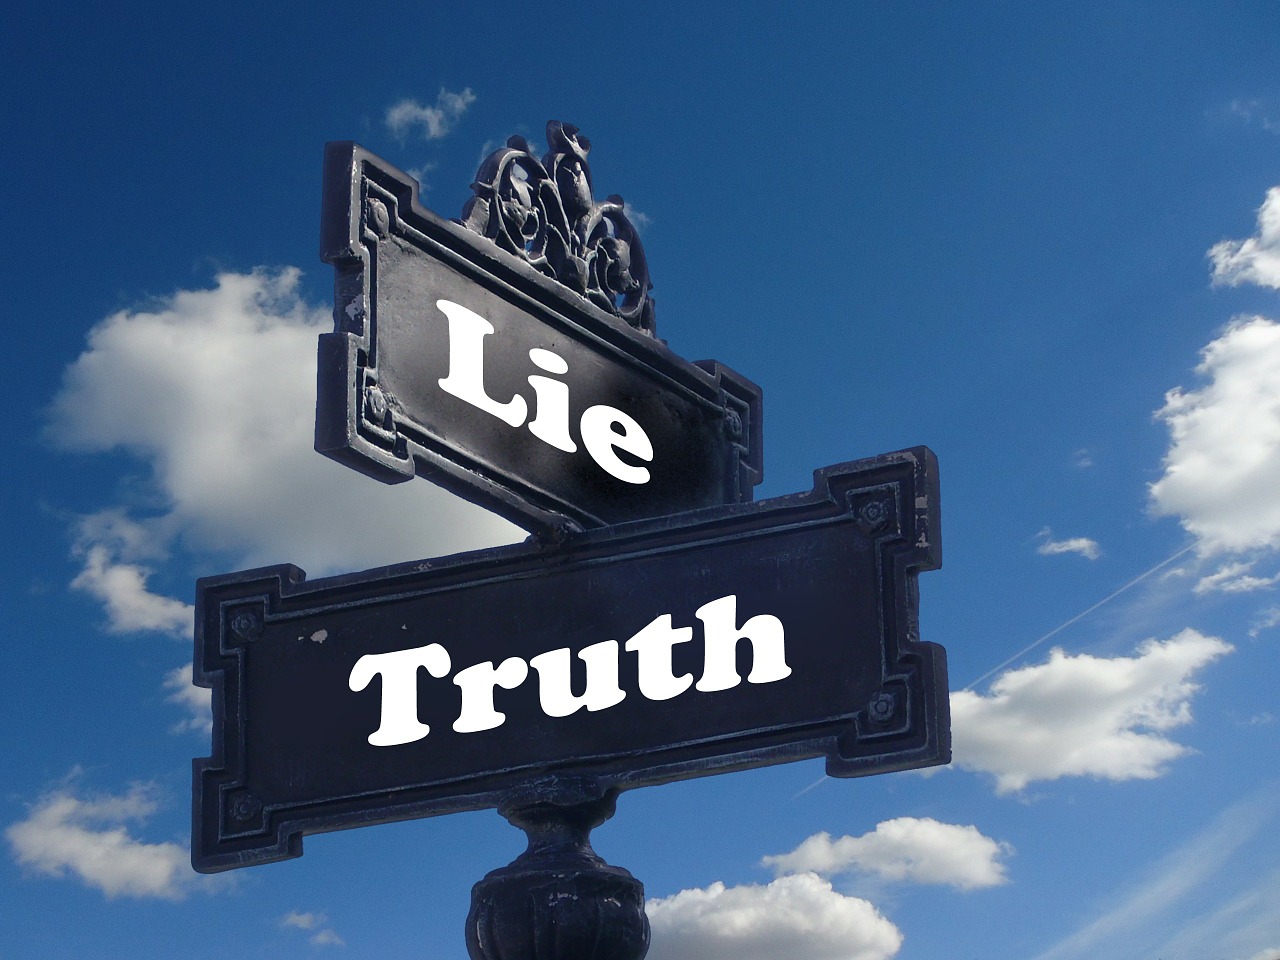 Détecter le mensonge n’est pas toujours une tâche aisée et&nbsp;nous le faisons mal lorsque nous y réfléchissons. En revanche, notre subconscient nous aide bien mieux à saisir la vérité. © Geralt, www.pixabay.com, DP